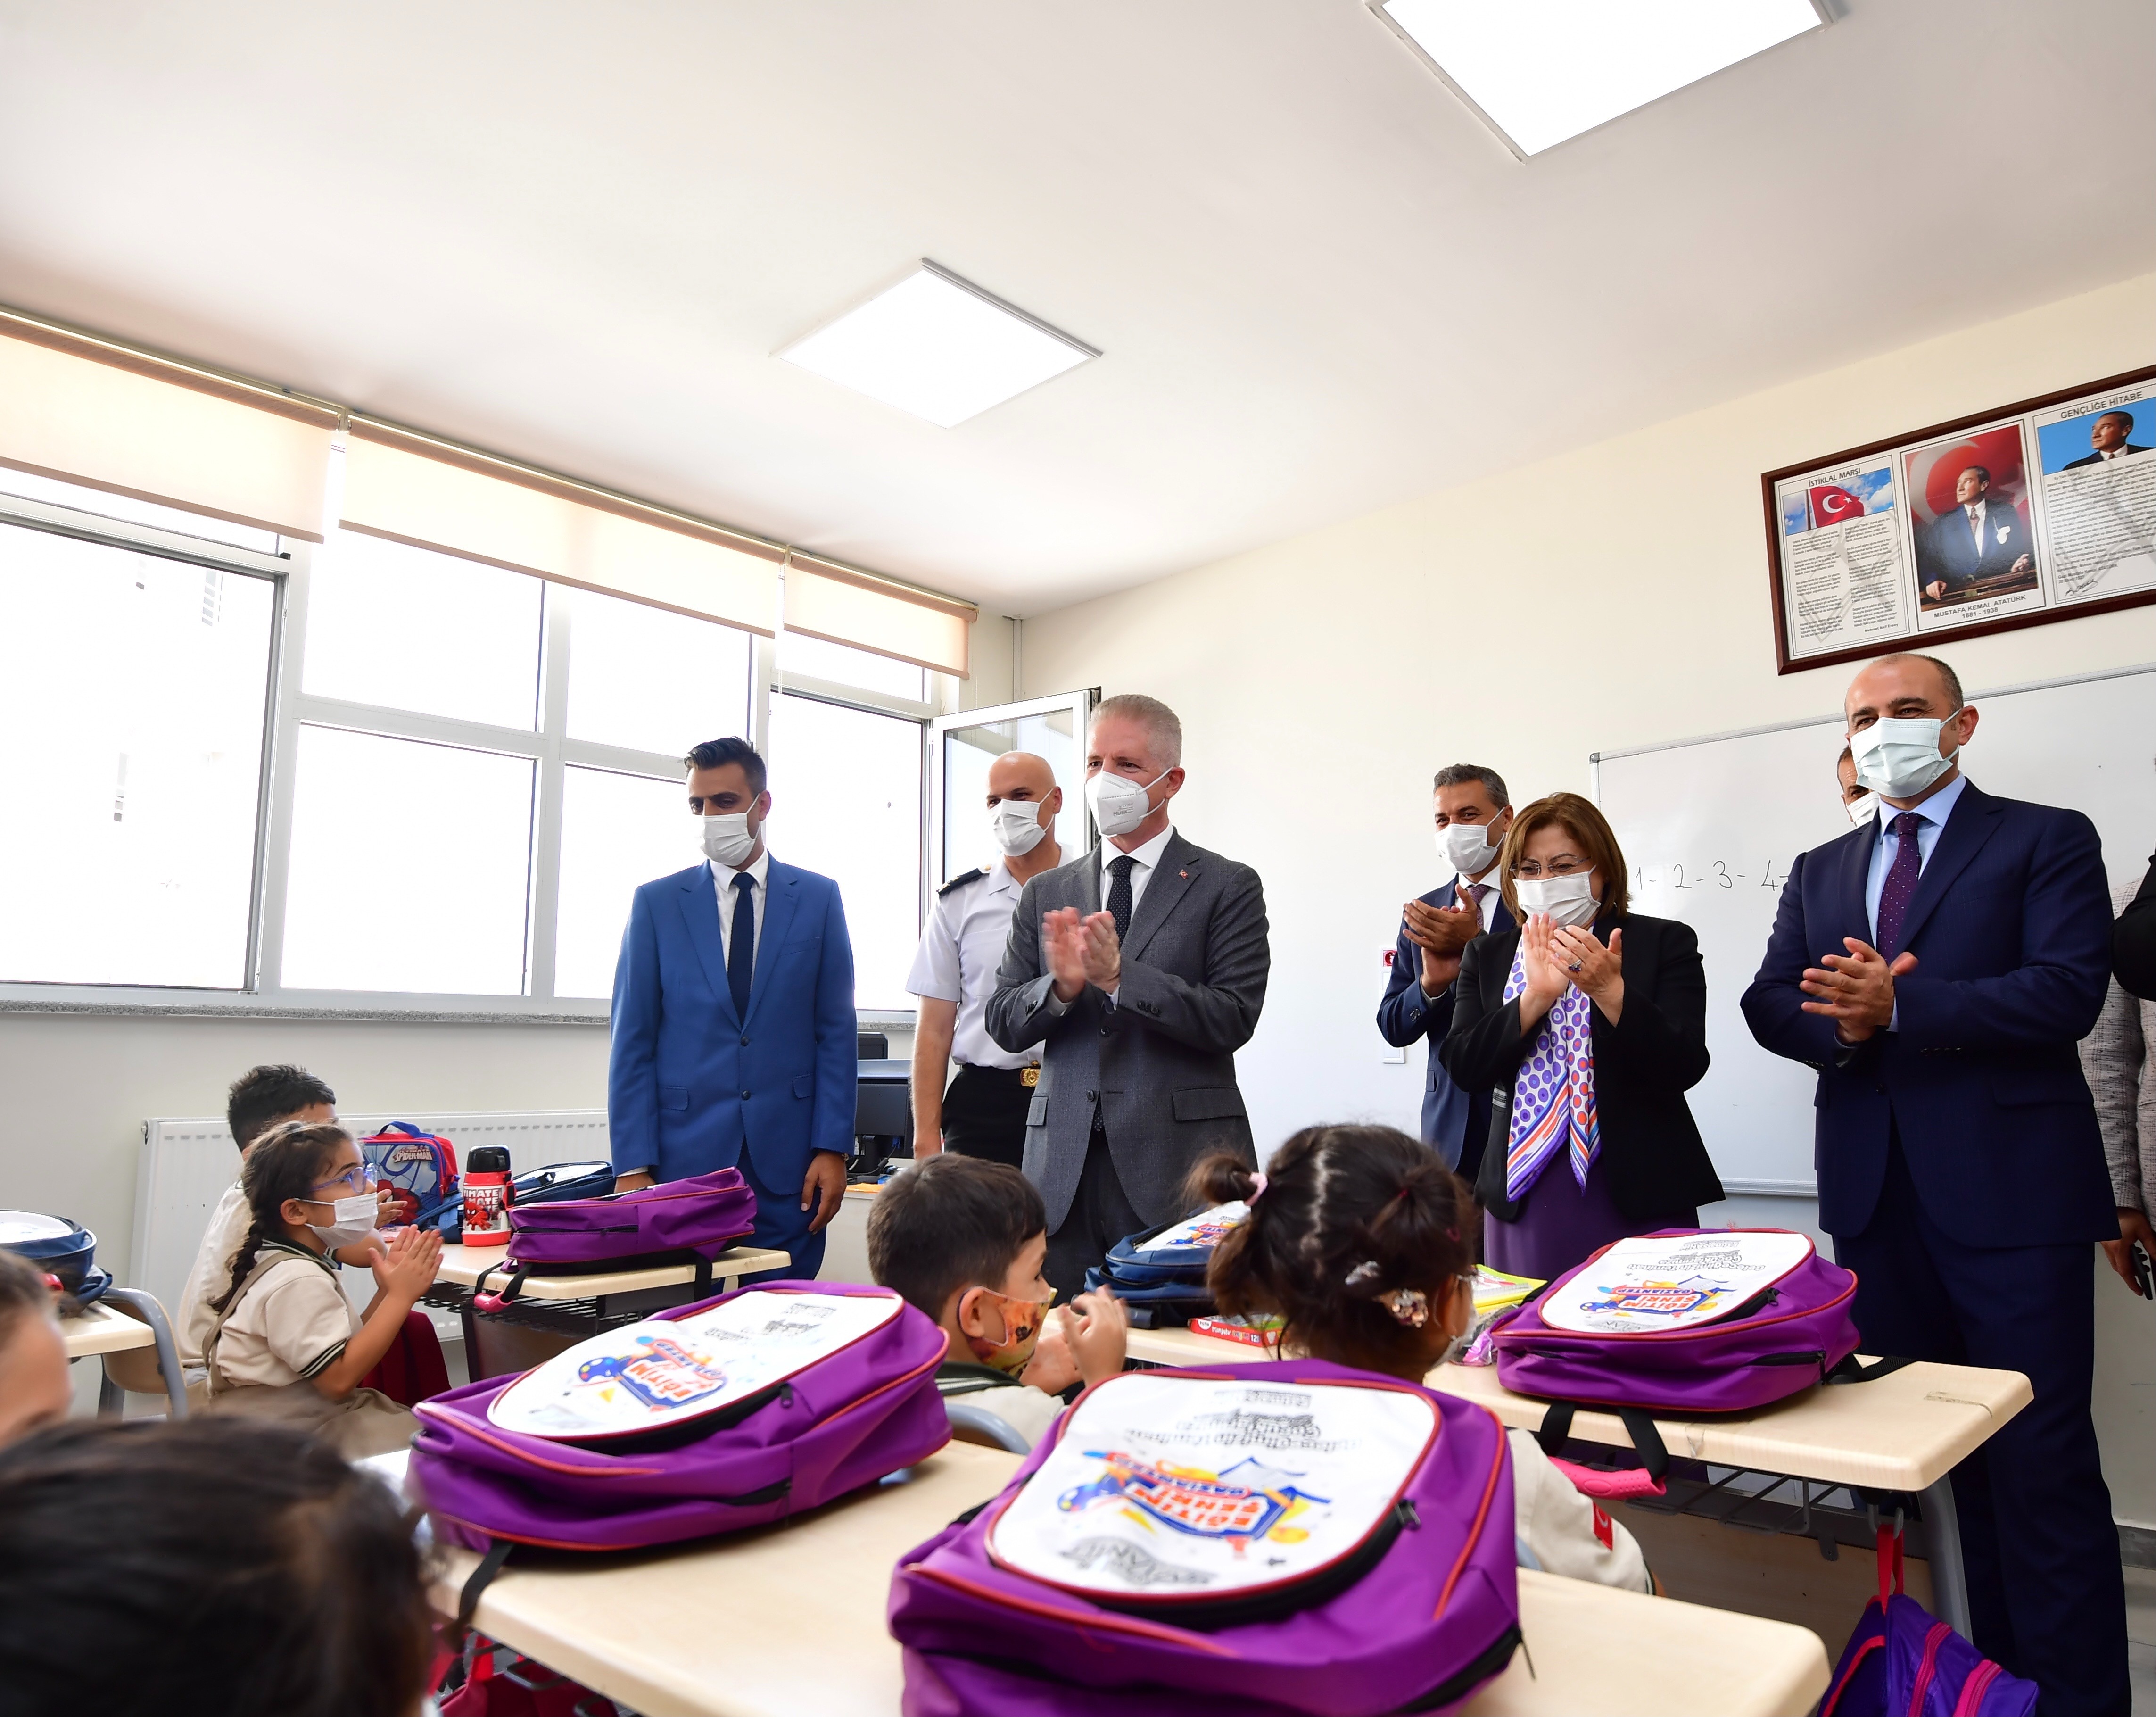 Şahintepe İlkokulu Törenle Açıldı